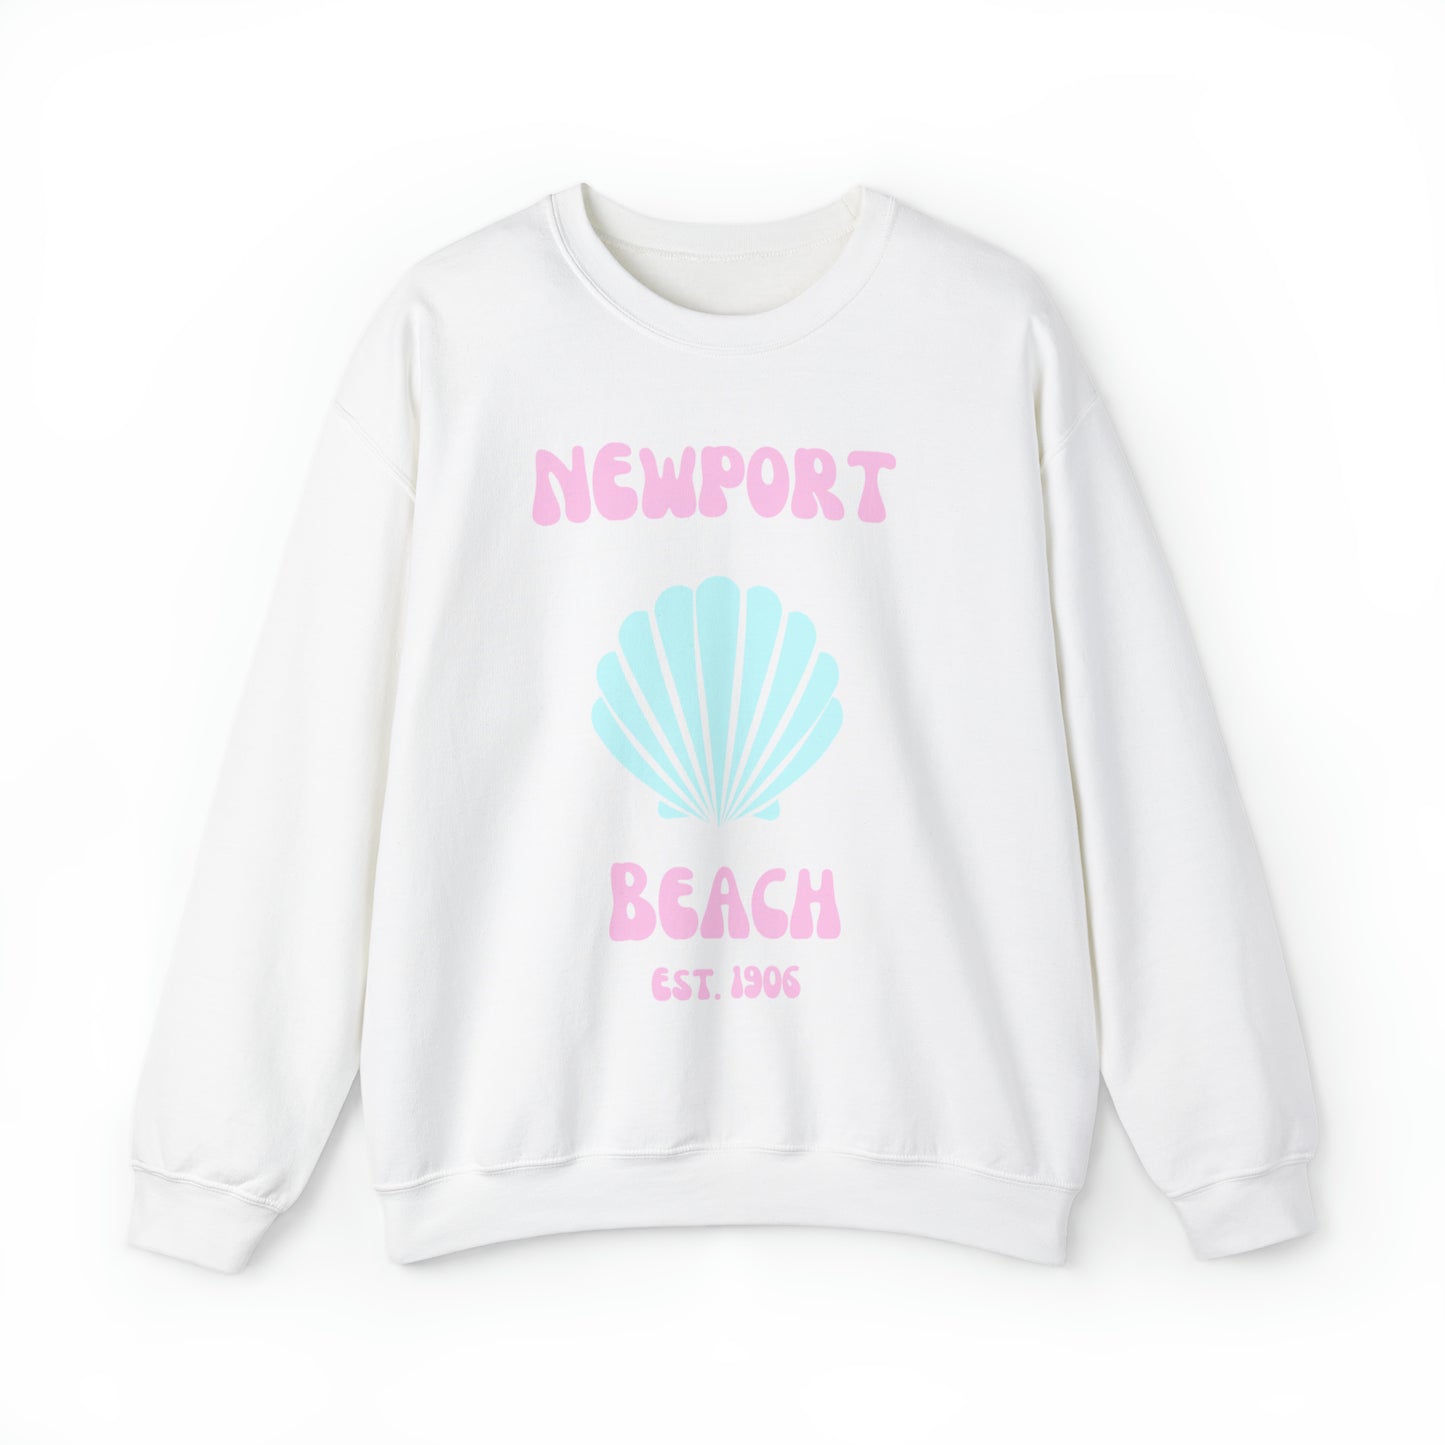 Newport Beach Est. 1906 sweatshirt